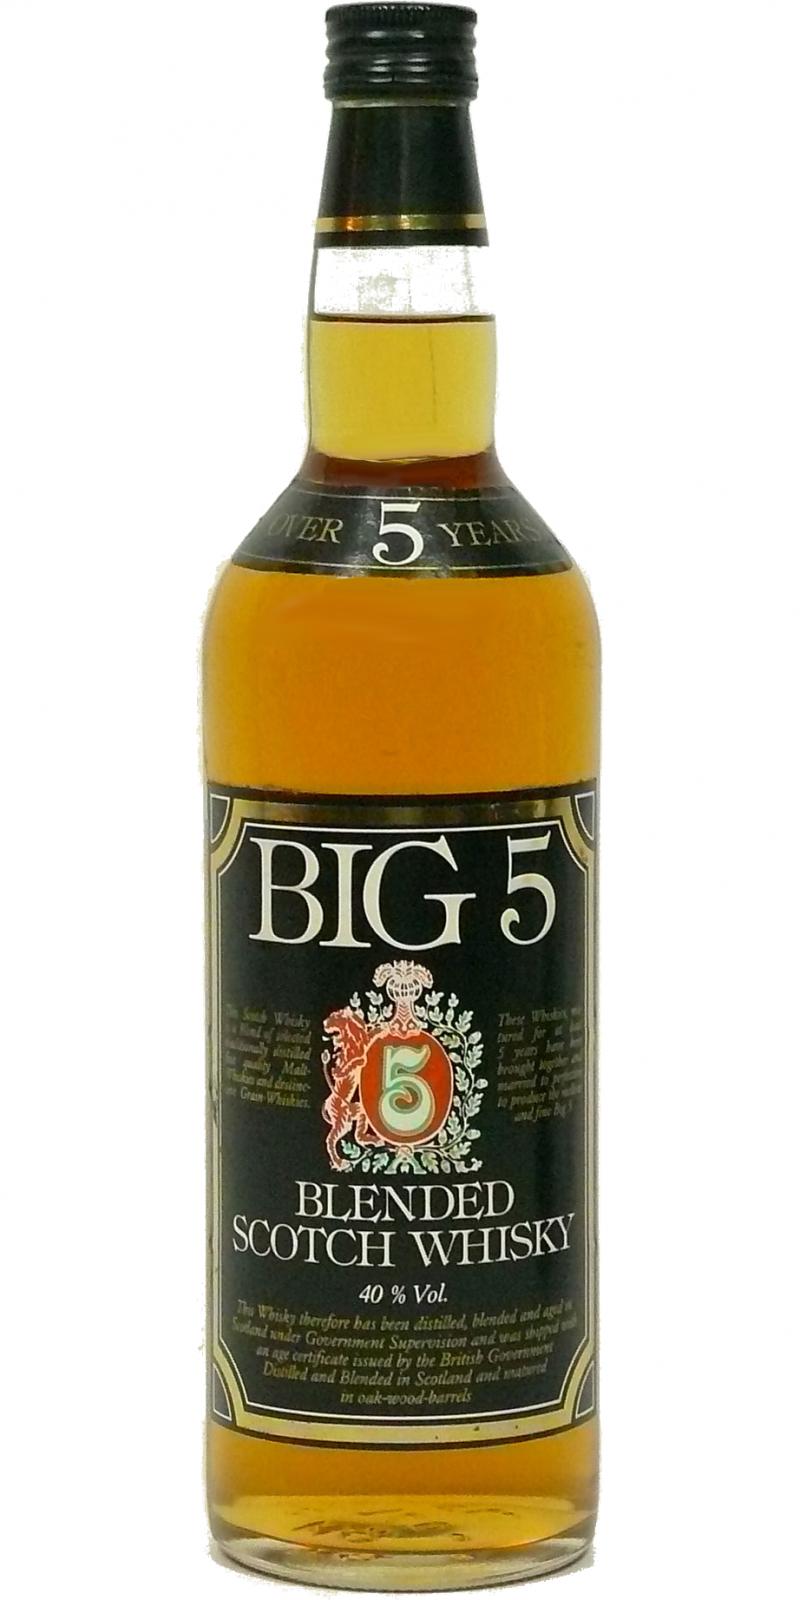 Big 5 05-year-old